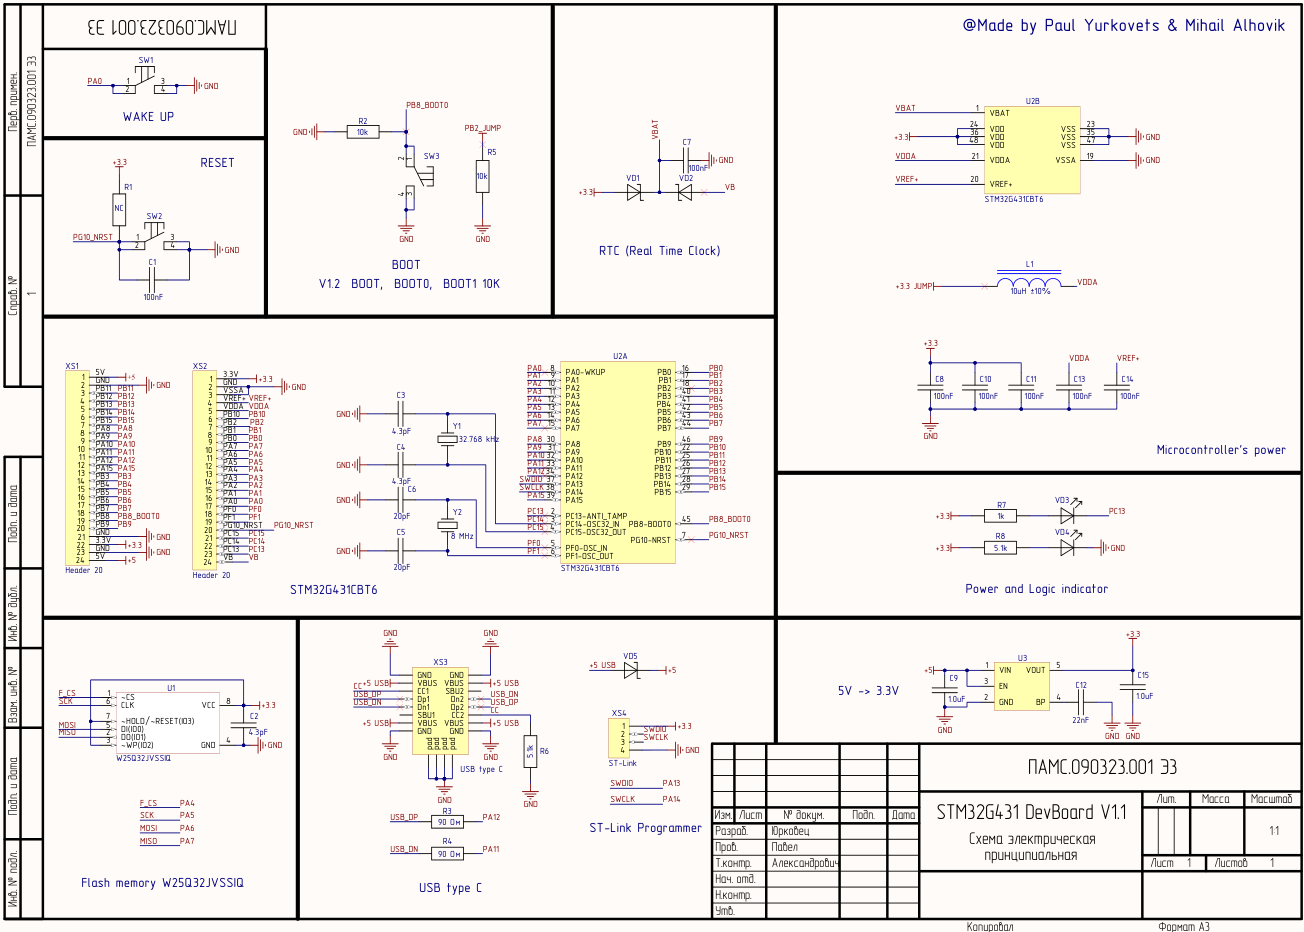 Рисунок 4 – Анализ схемы электрической принципиальной платы STM32G431 DevBoard V1.1